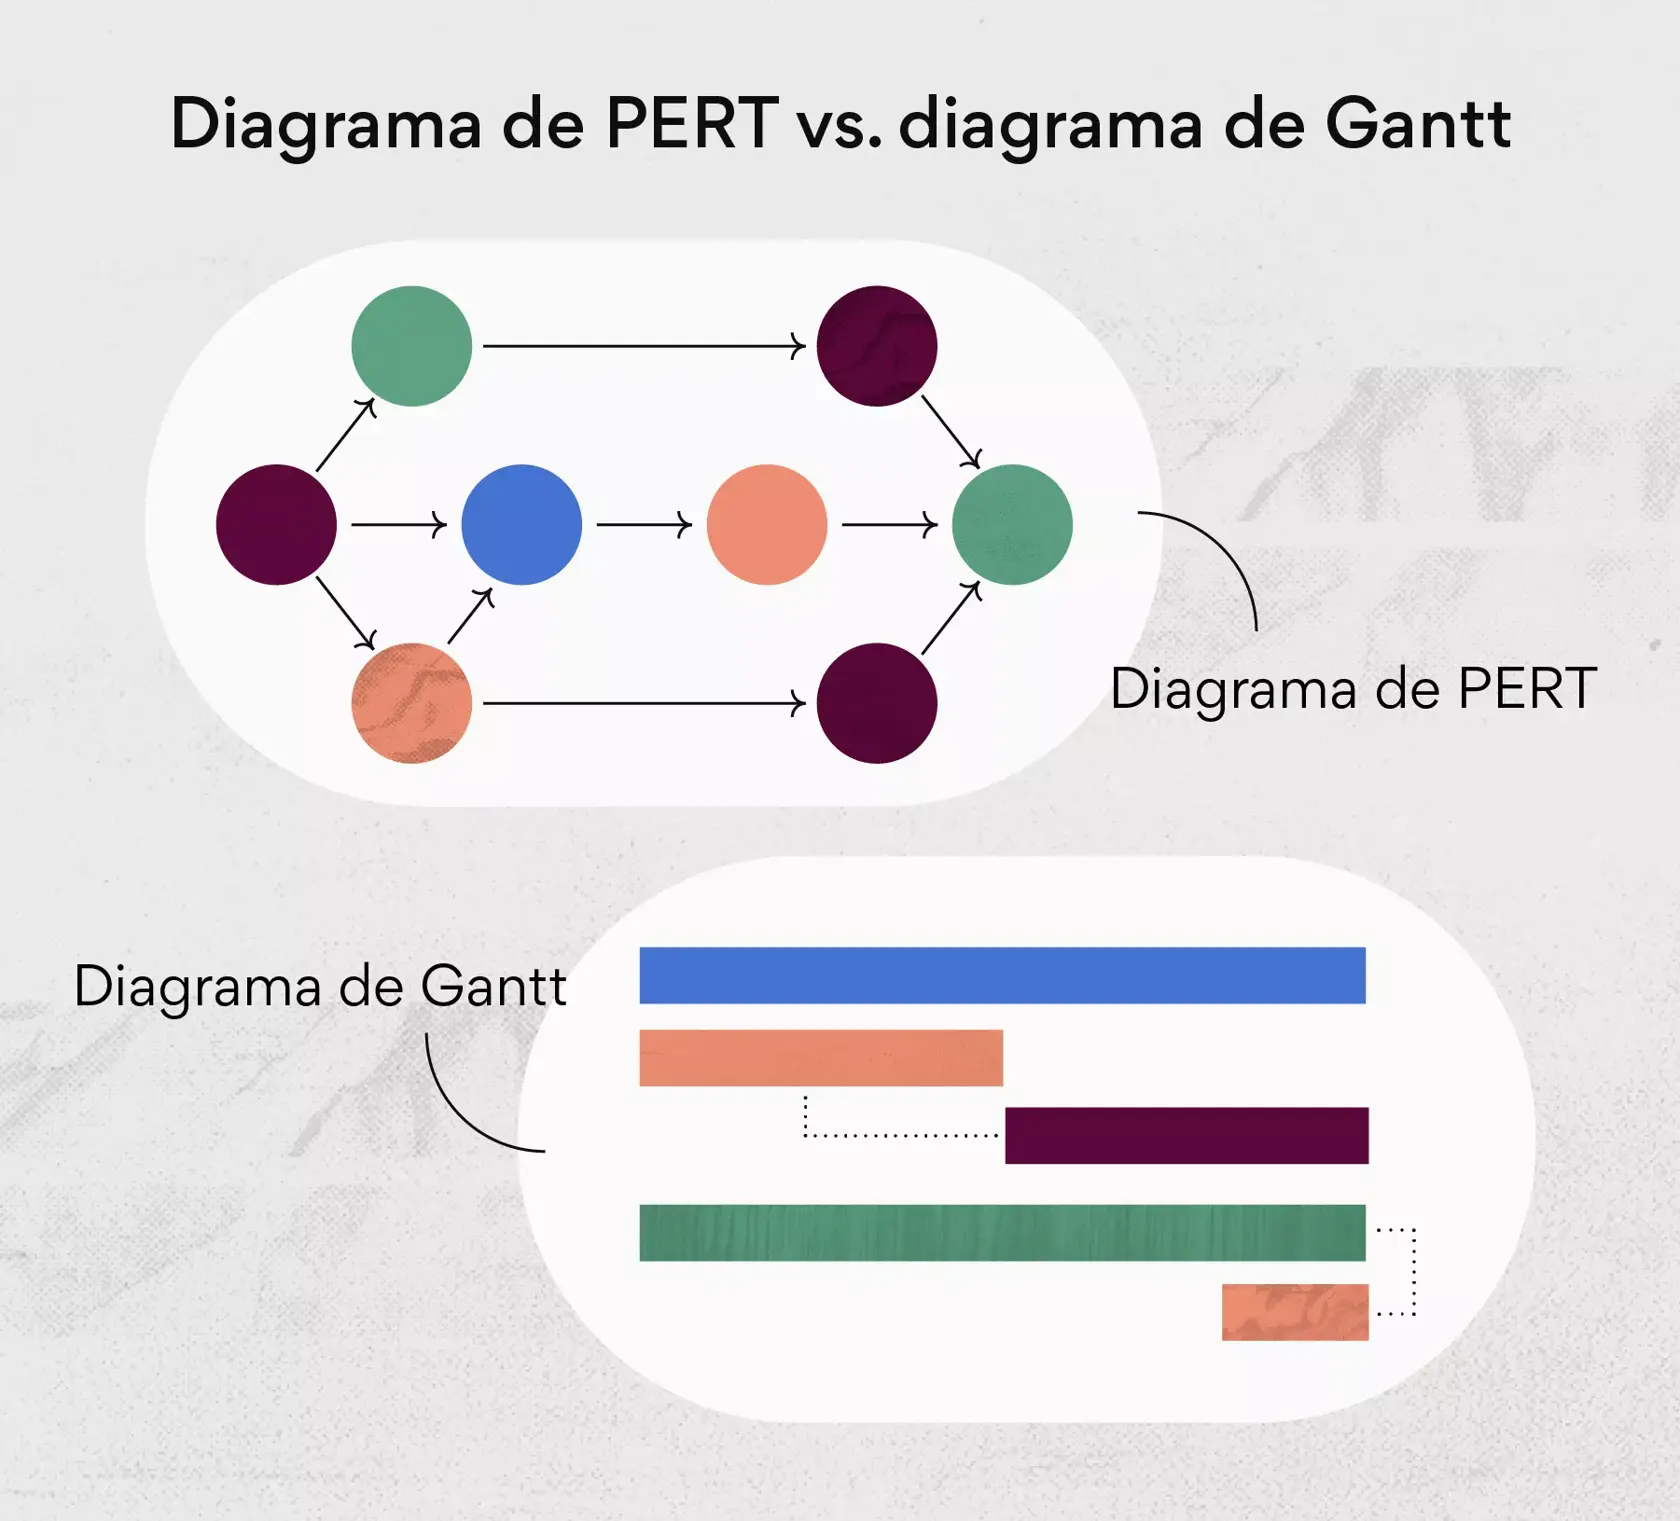 Diagrama de PERT vs. diagrama de Gantt